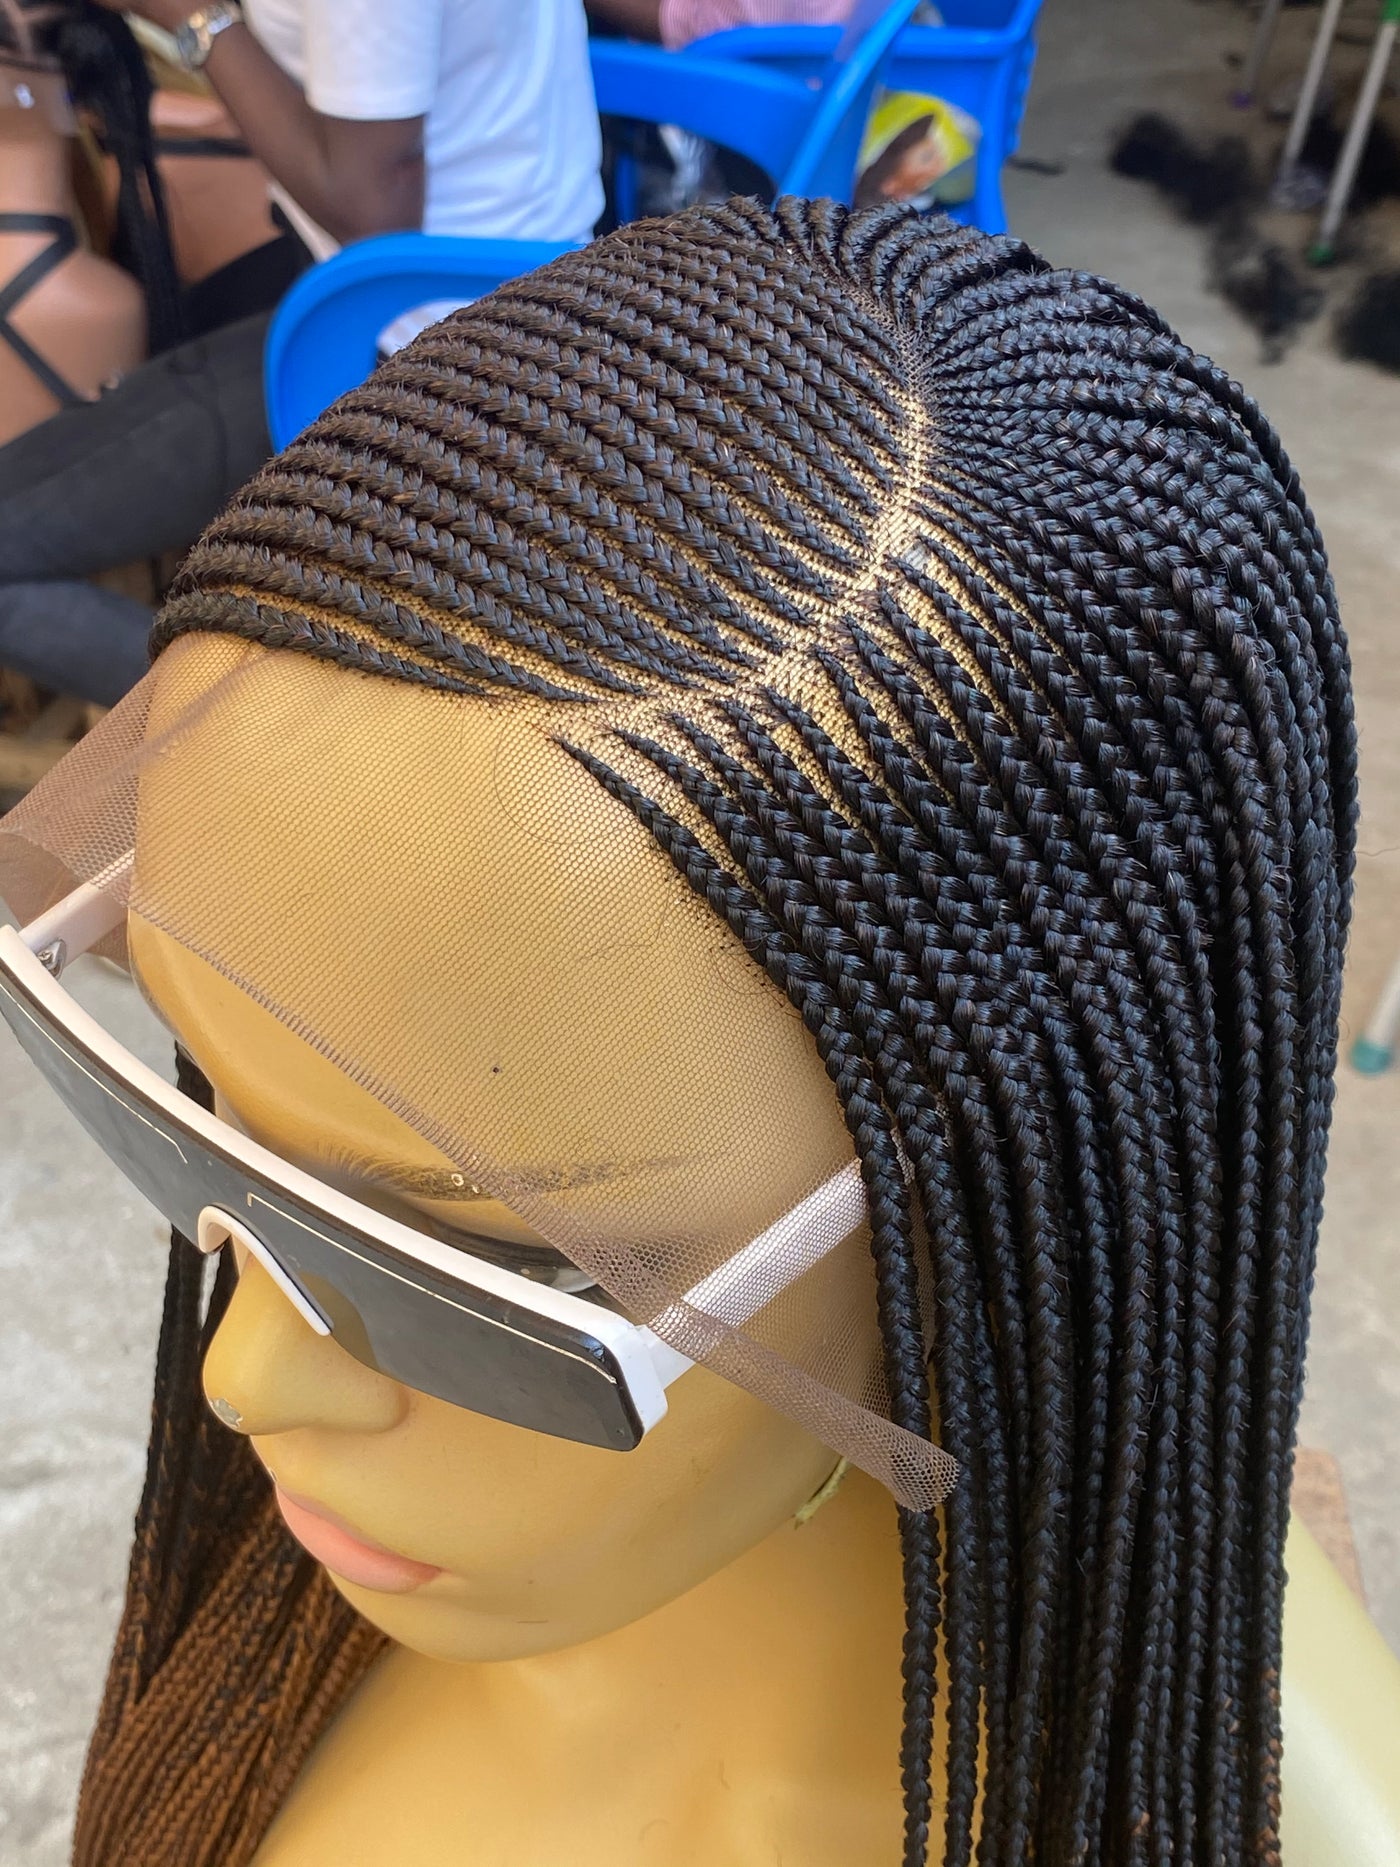 Cornrow Braid Wig (13x4 Lace Frontal) - C cut Poshglad Braided Wigs Cornrow Braid Wig